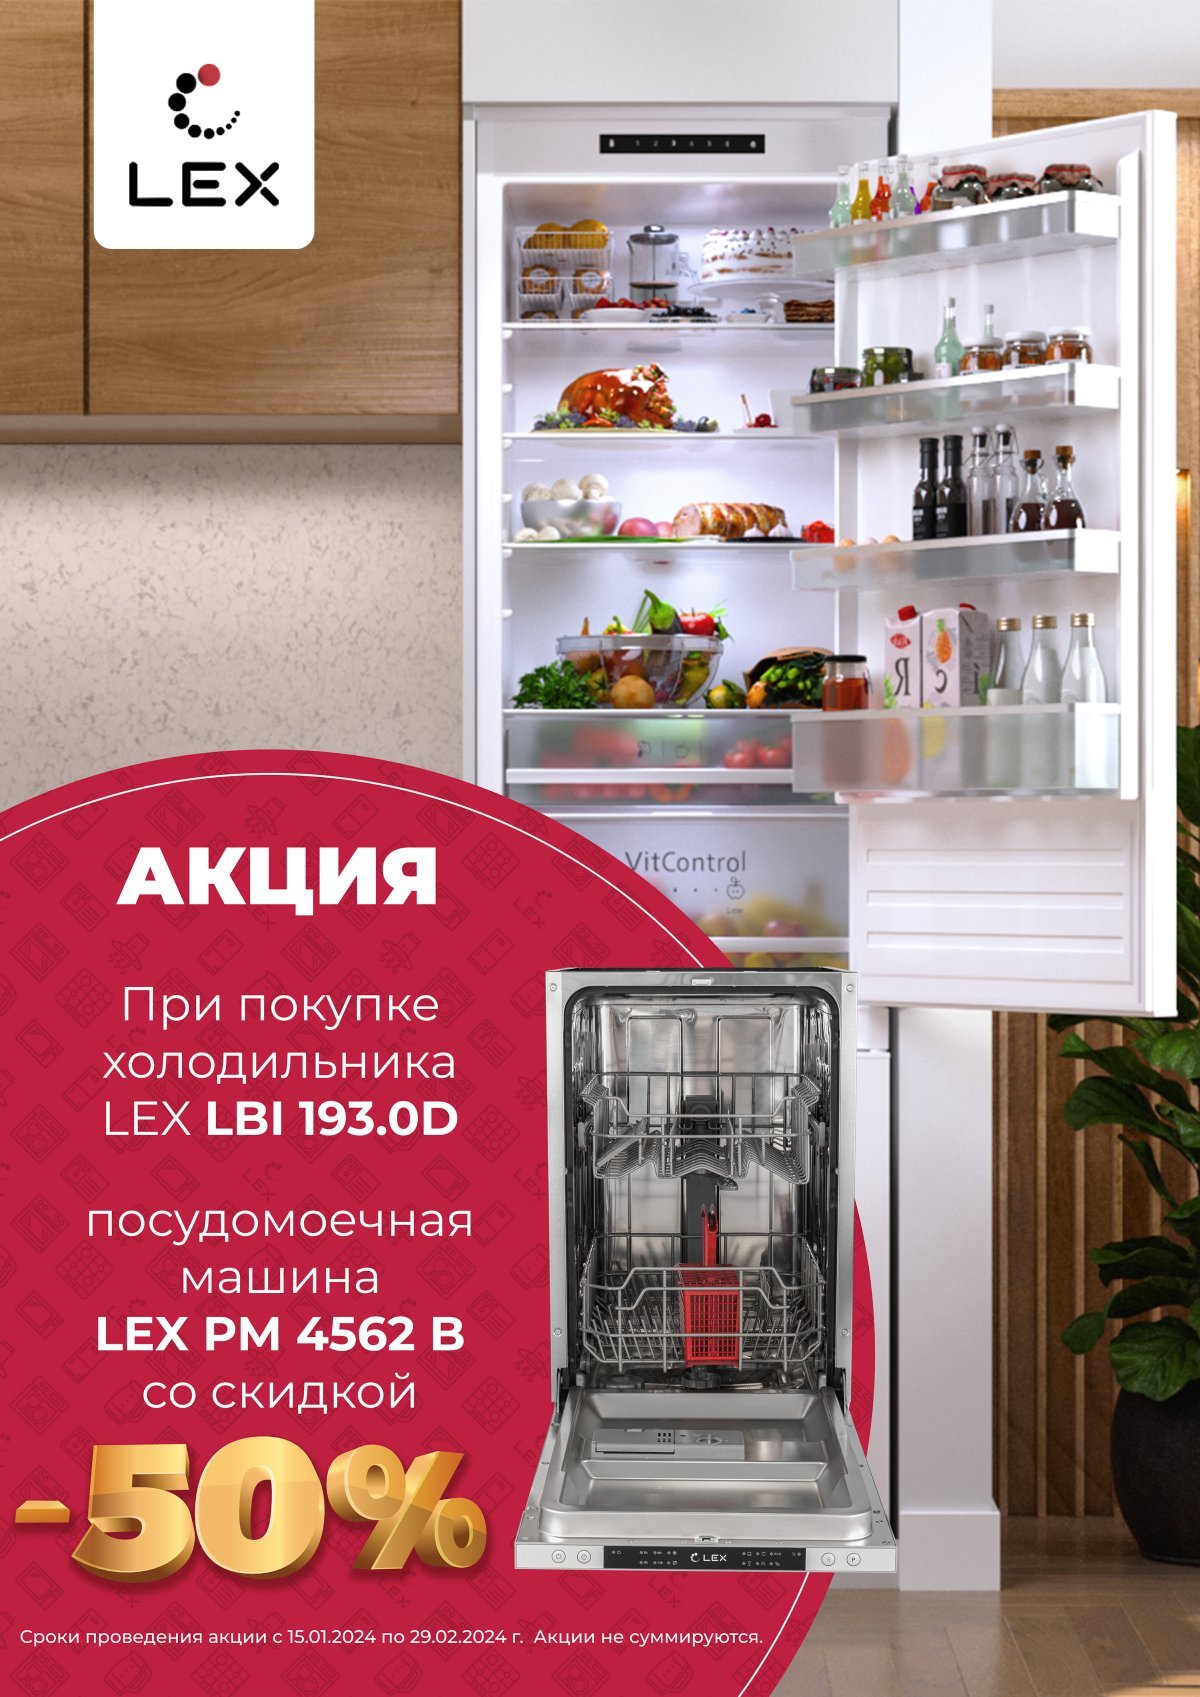 Посудомойка LEX PM 4562B за полцены при покупке холодильника!